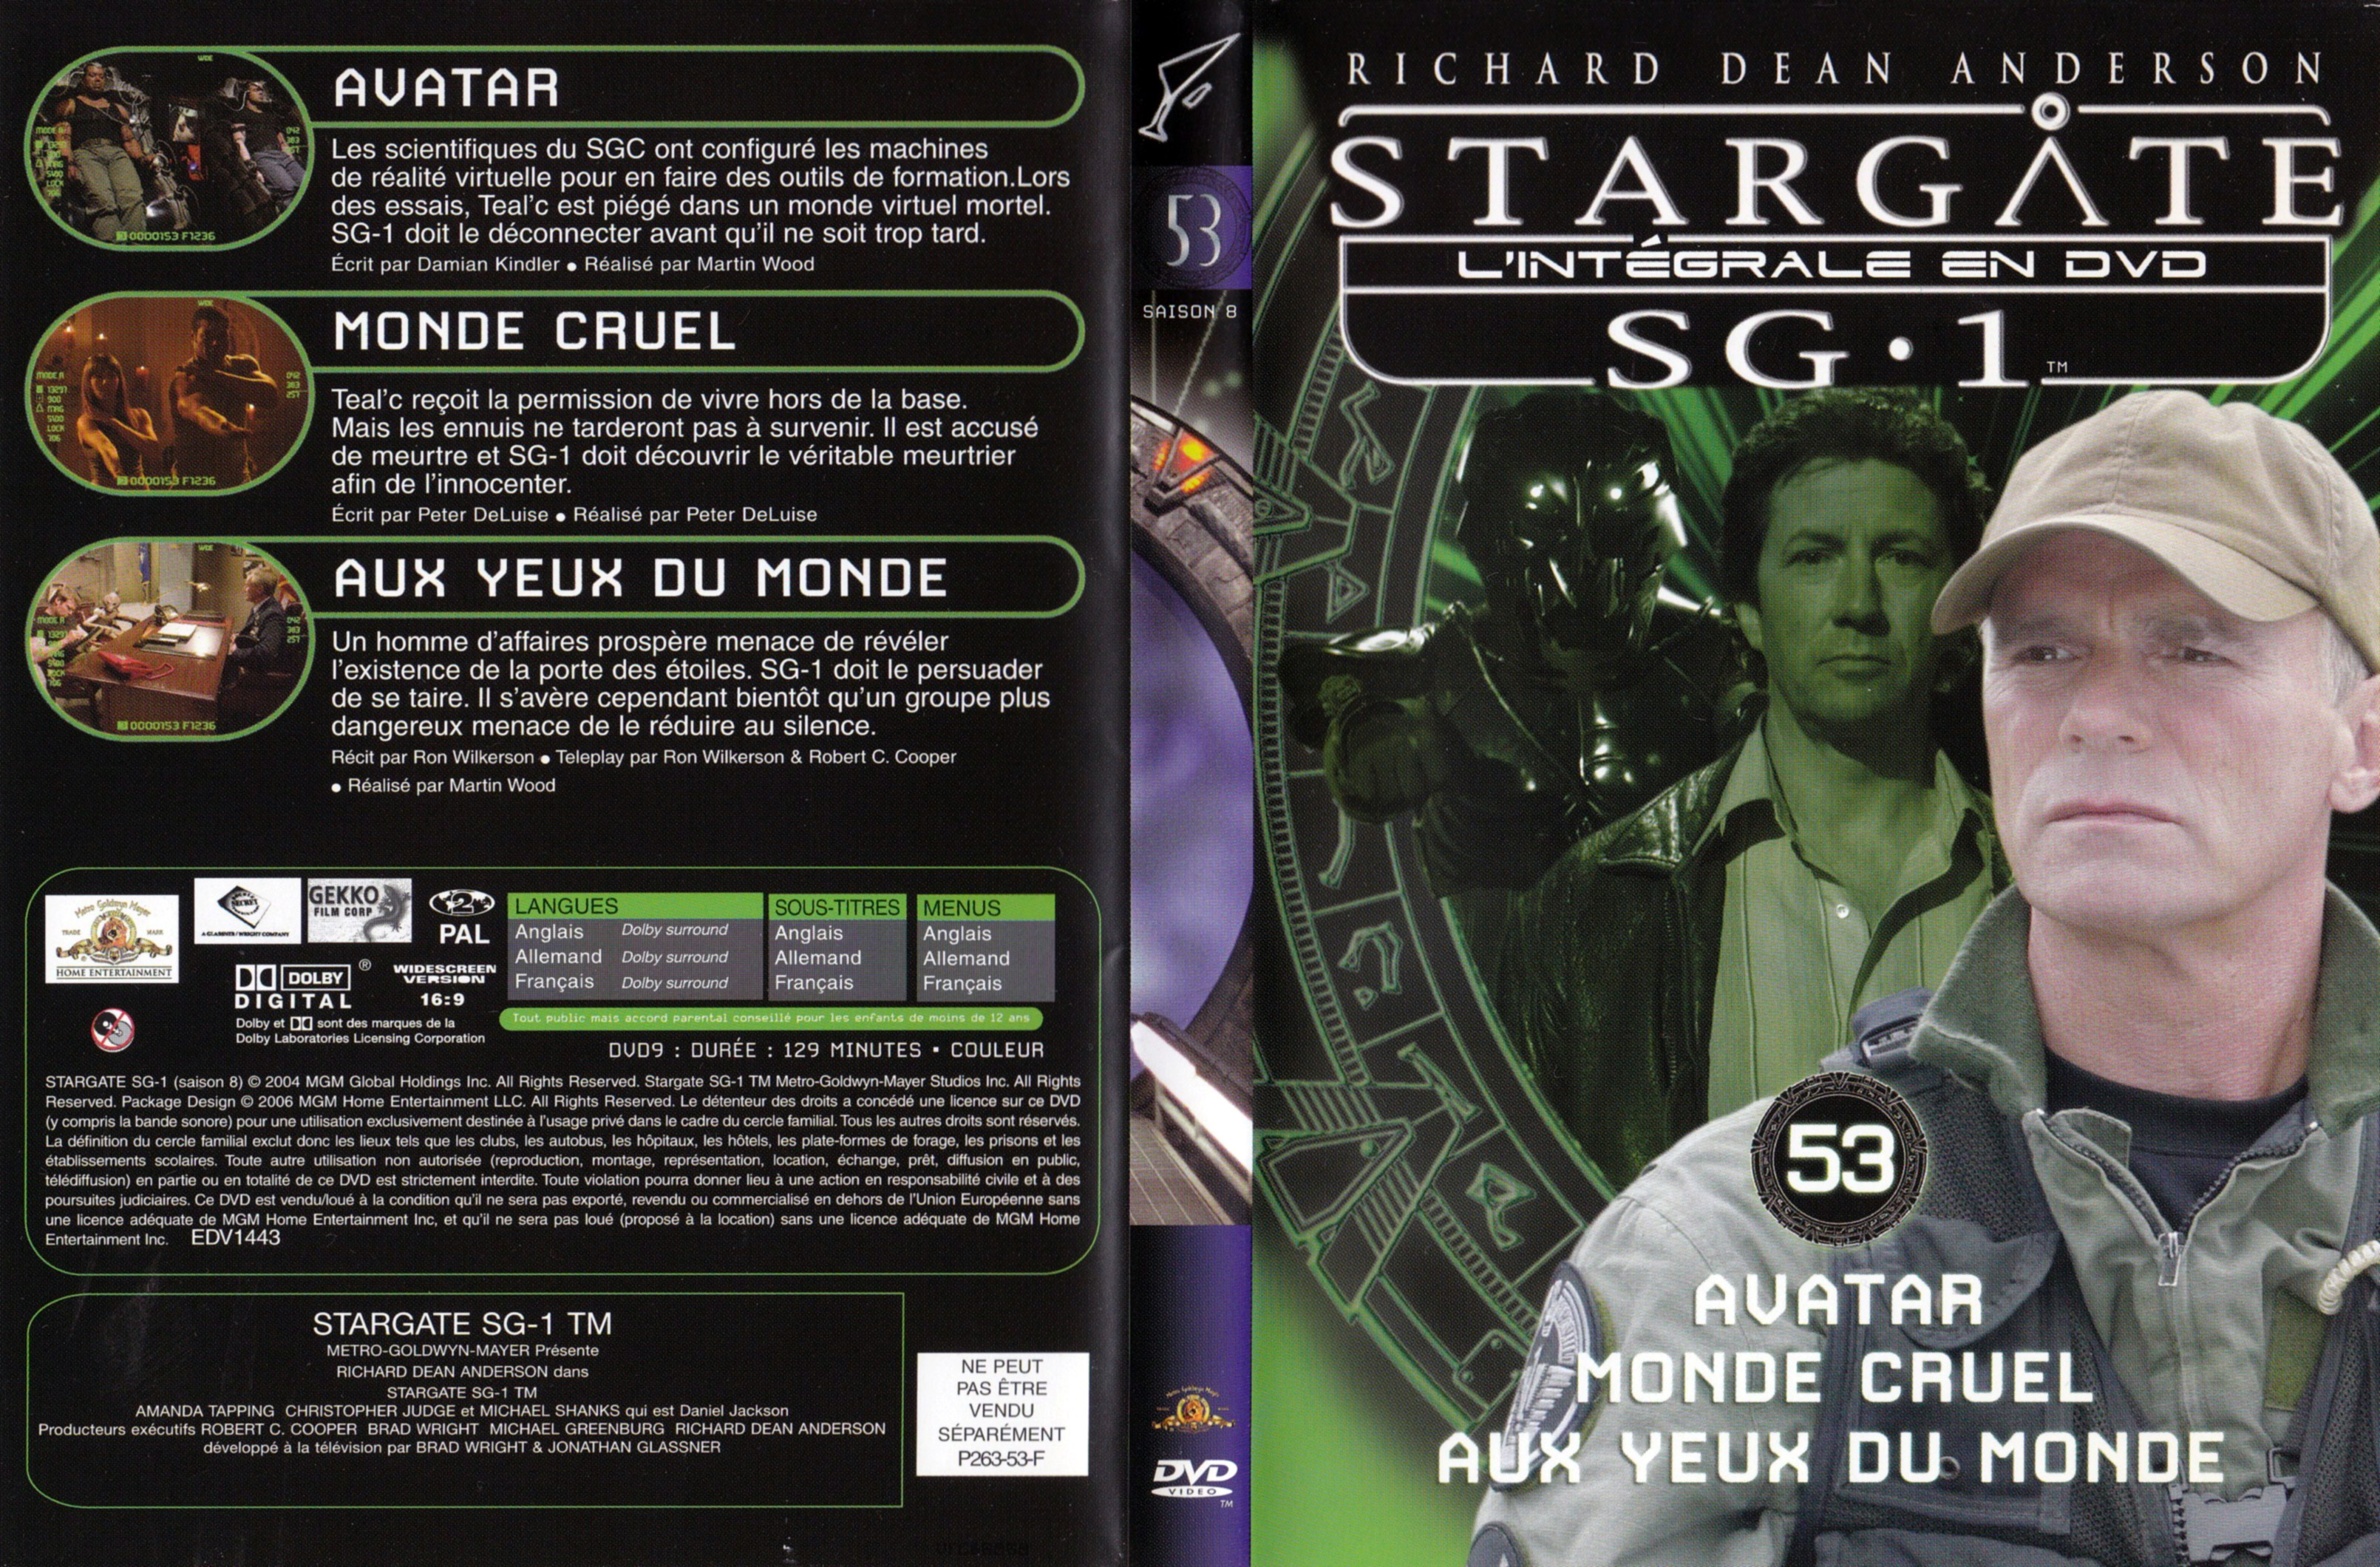 Jaquette DVD Stargate SG1 Intgrale Saison 8 vol 53